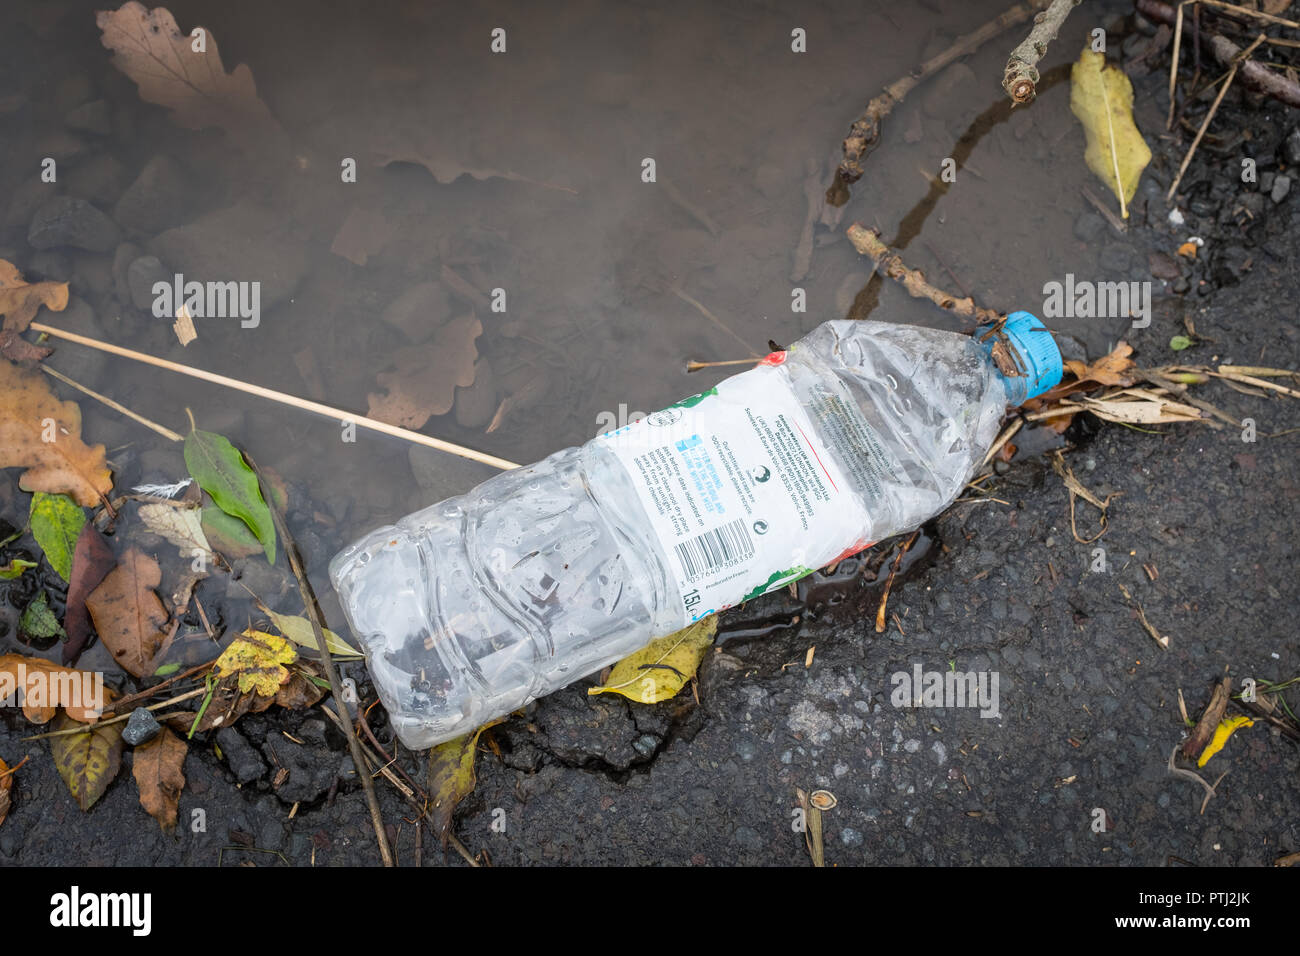 Botella de plástico desechada al lado de un charco, mostrando un descuido desprecio por el medio ambiente. Foto de stock